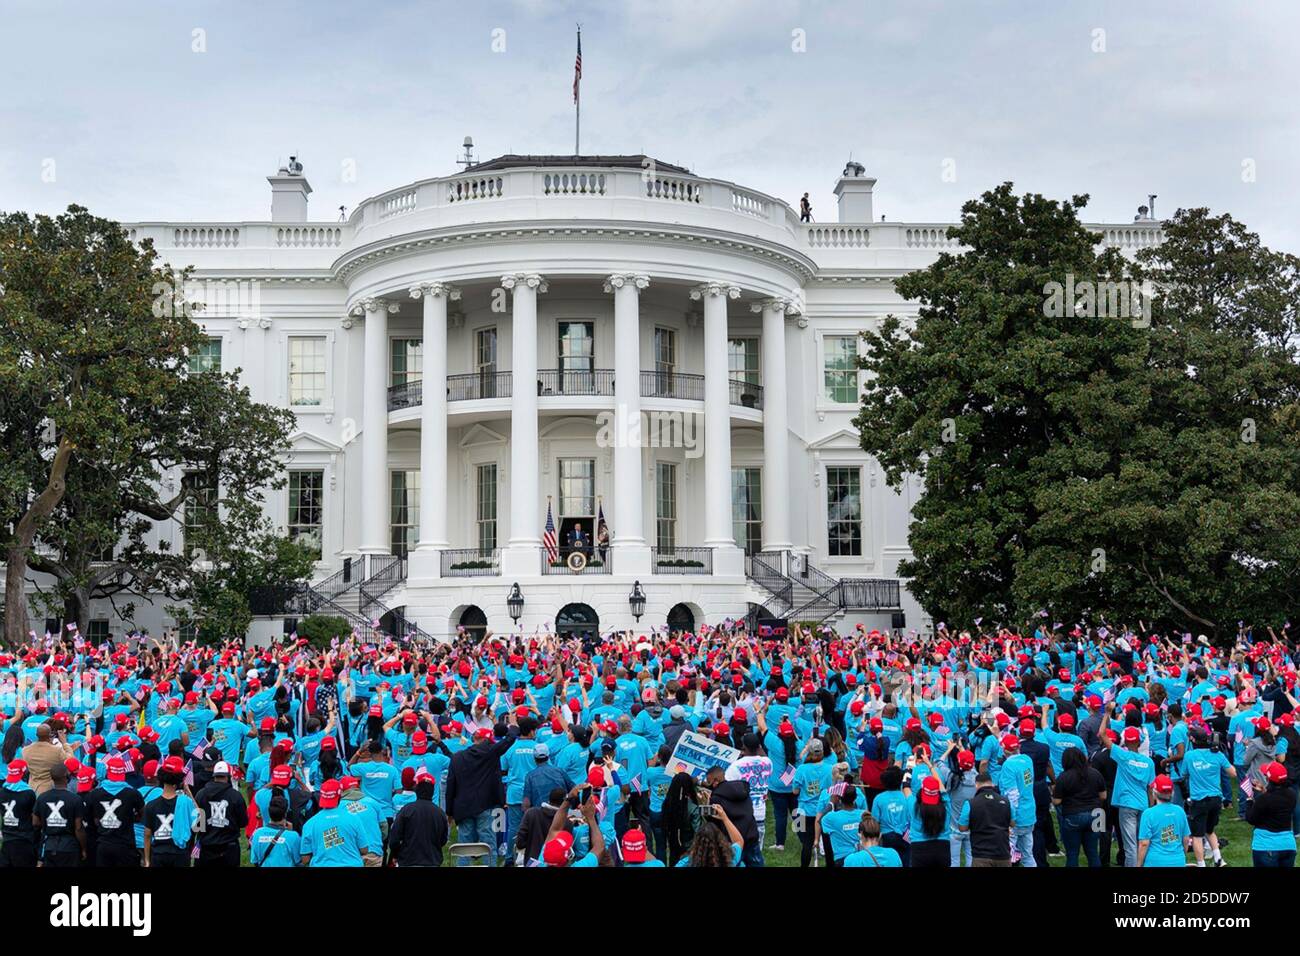 El defensor del presidente estadounidense Donald Trump, vestido con sombreros de la MAGA rojos, animó durante una campaña de campaña temática de ley y orden en el South Lawn of the White House el 10 de octubre de 2020 en Washington, DC. Foto de stock